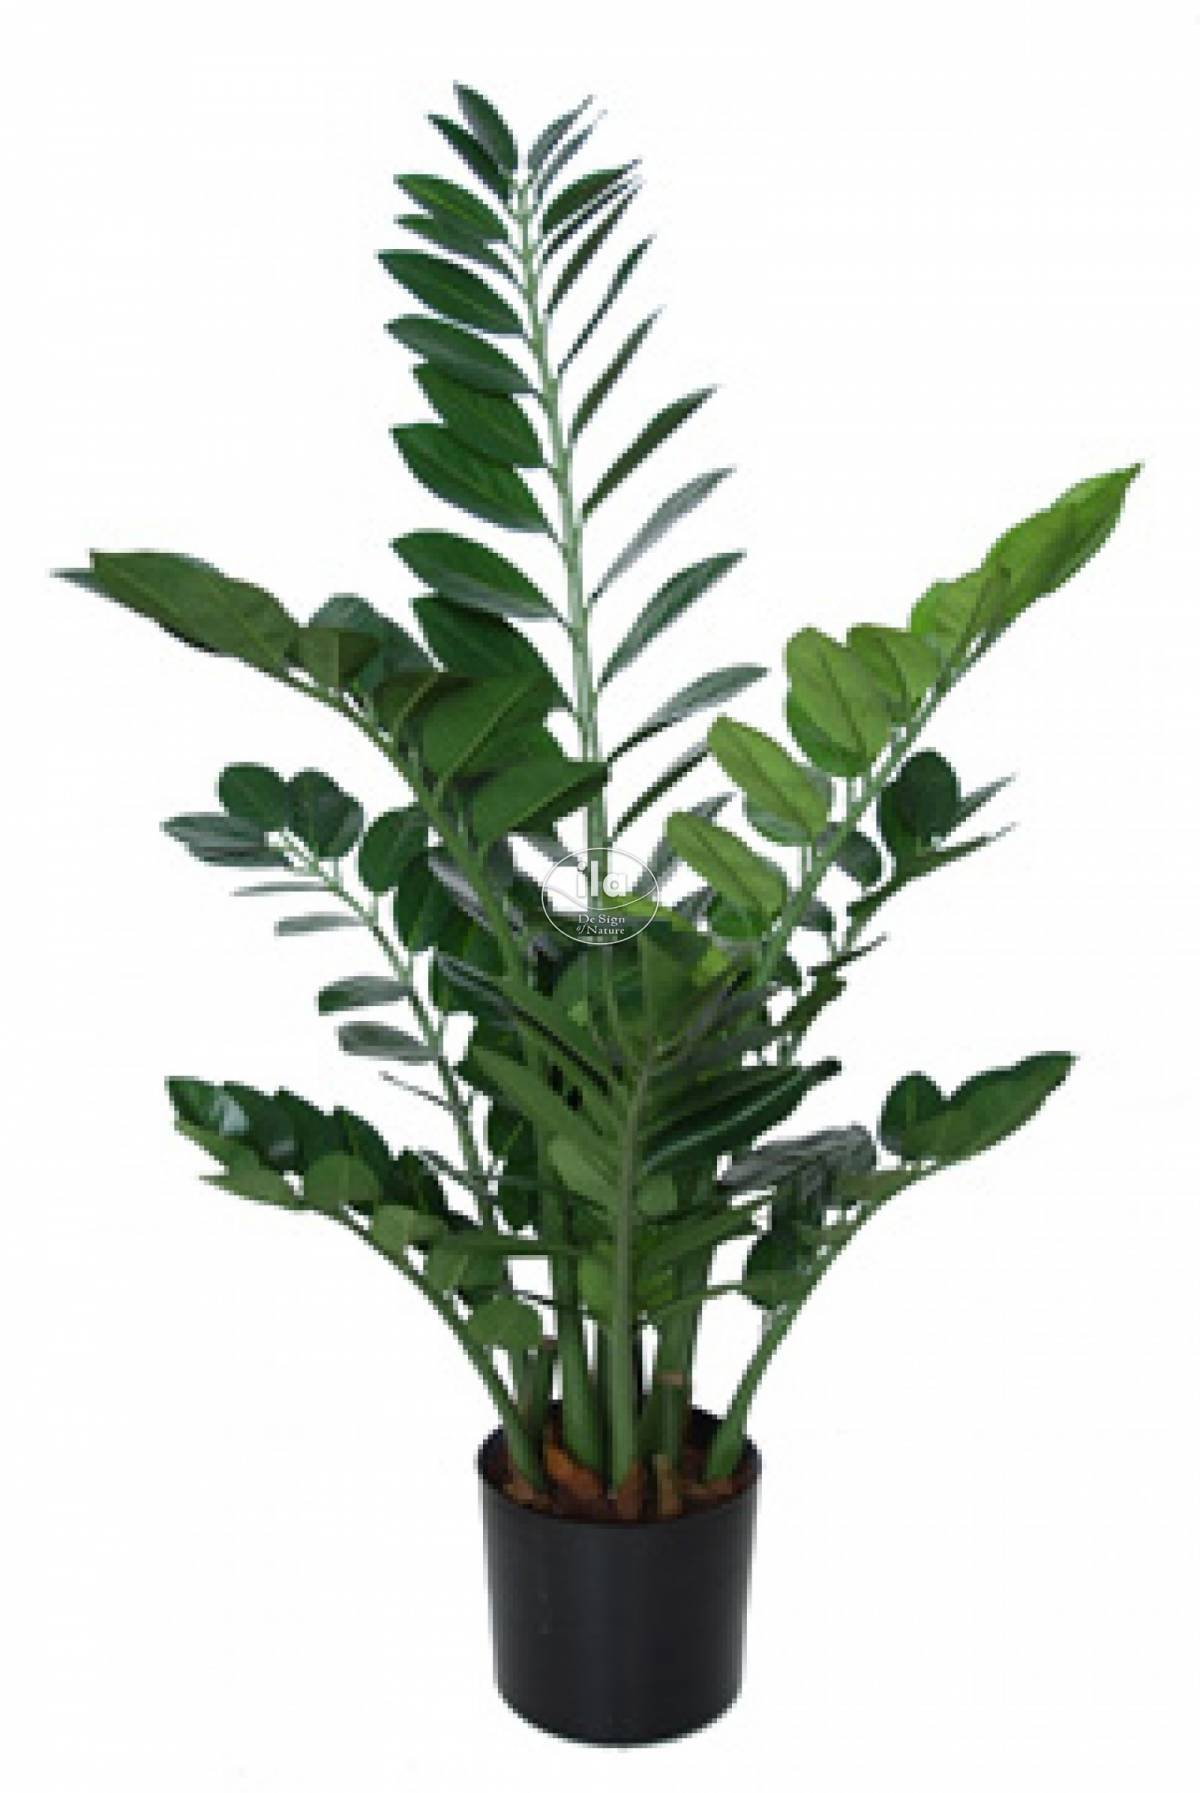 87670-zamiifolia-plant-w-pot-90-cm-green-5439grn-1-1.jpg